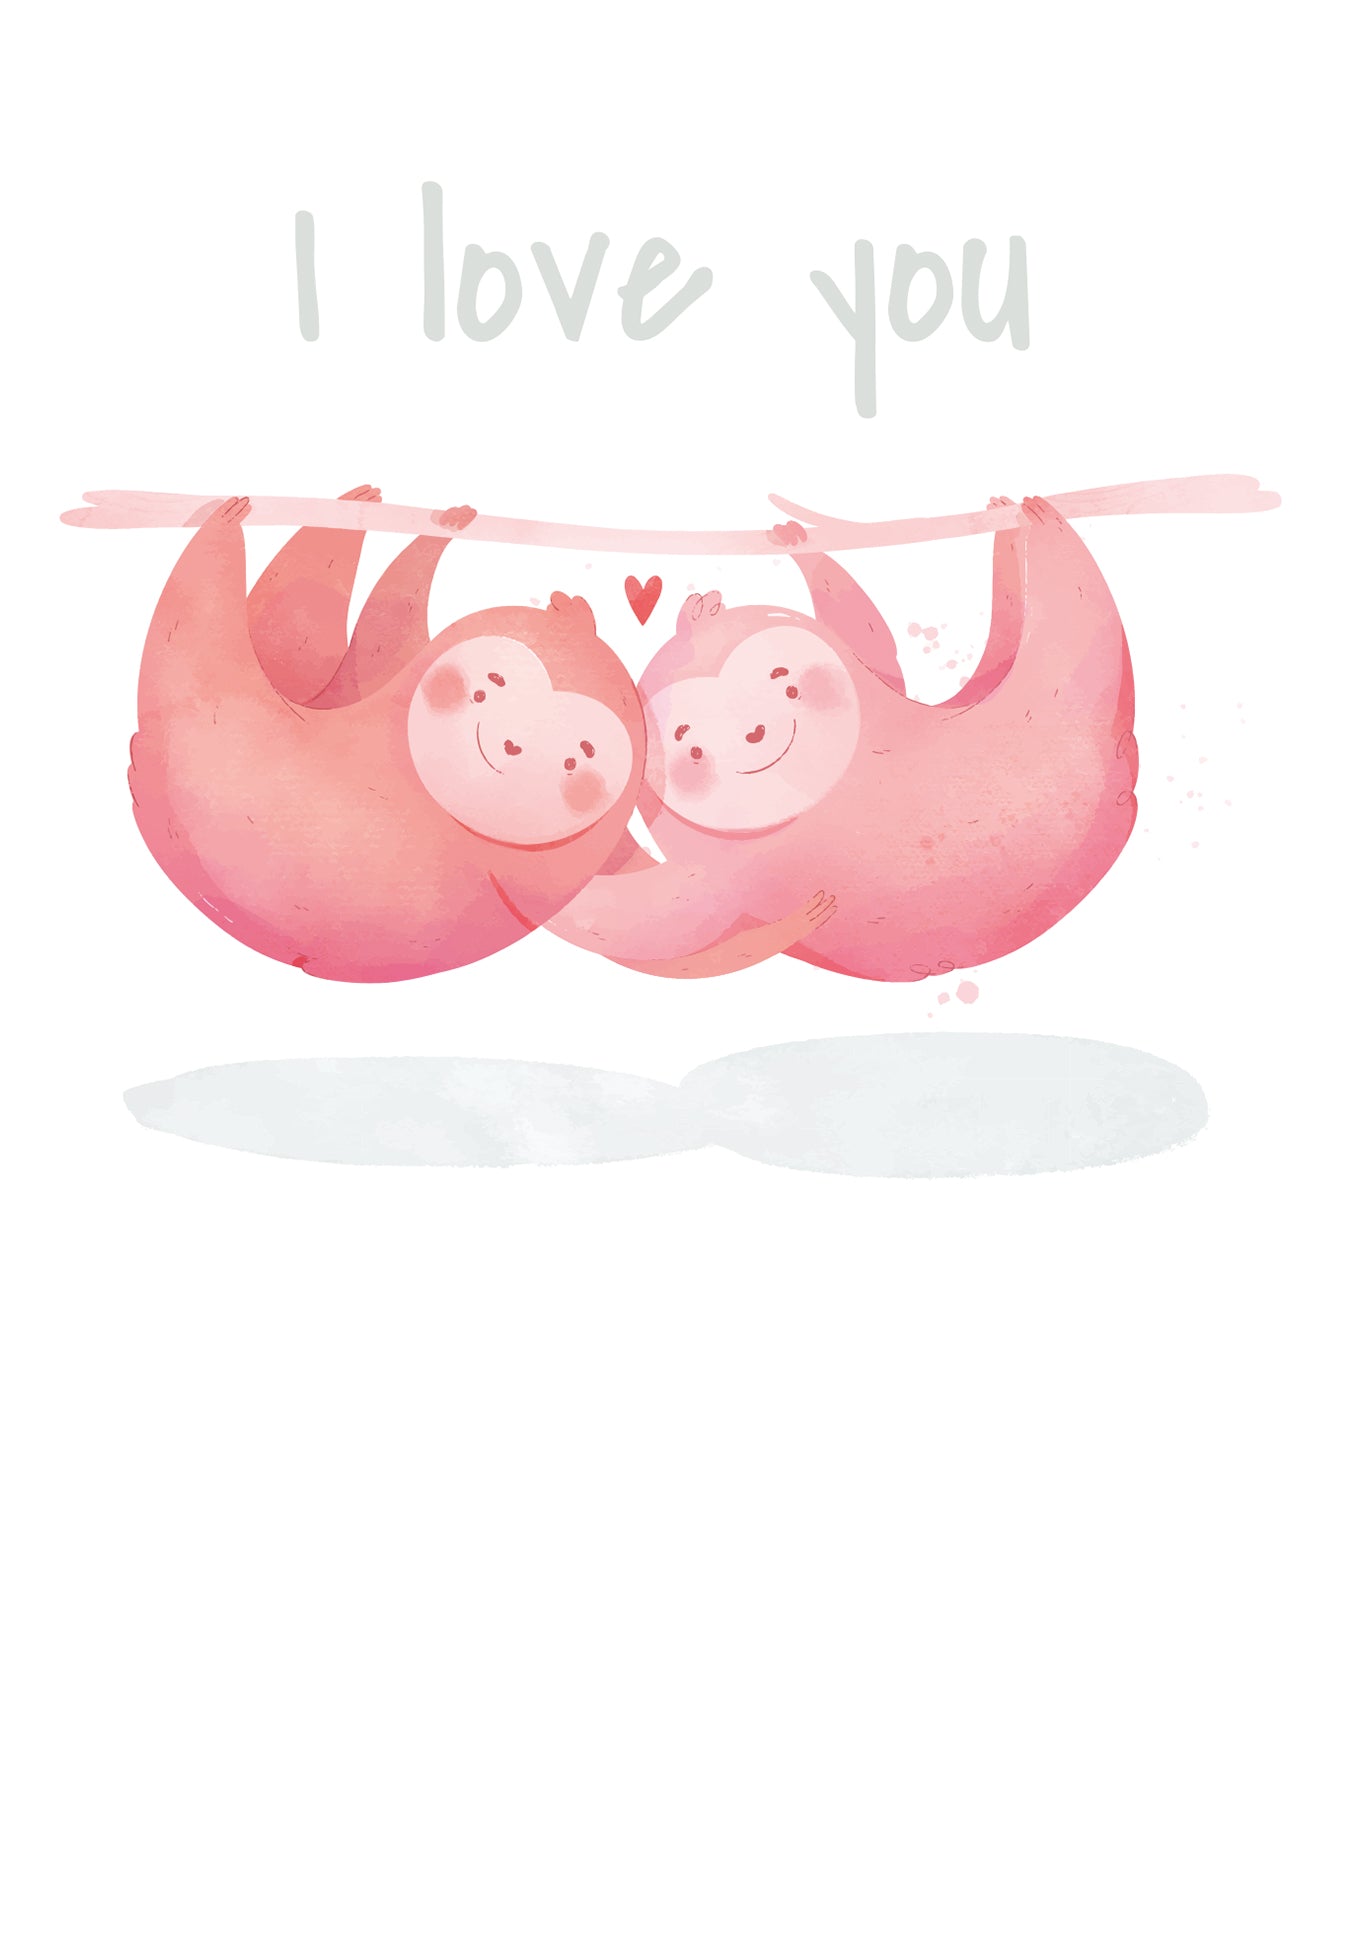 I love you - Sloths (Valeur du bon)